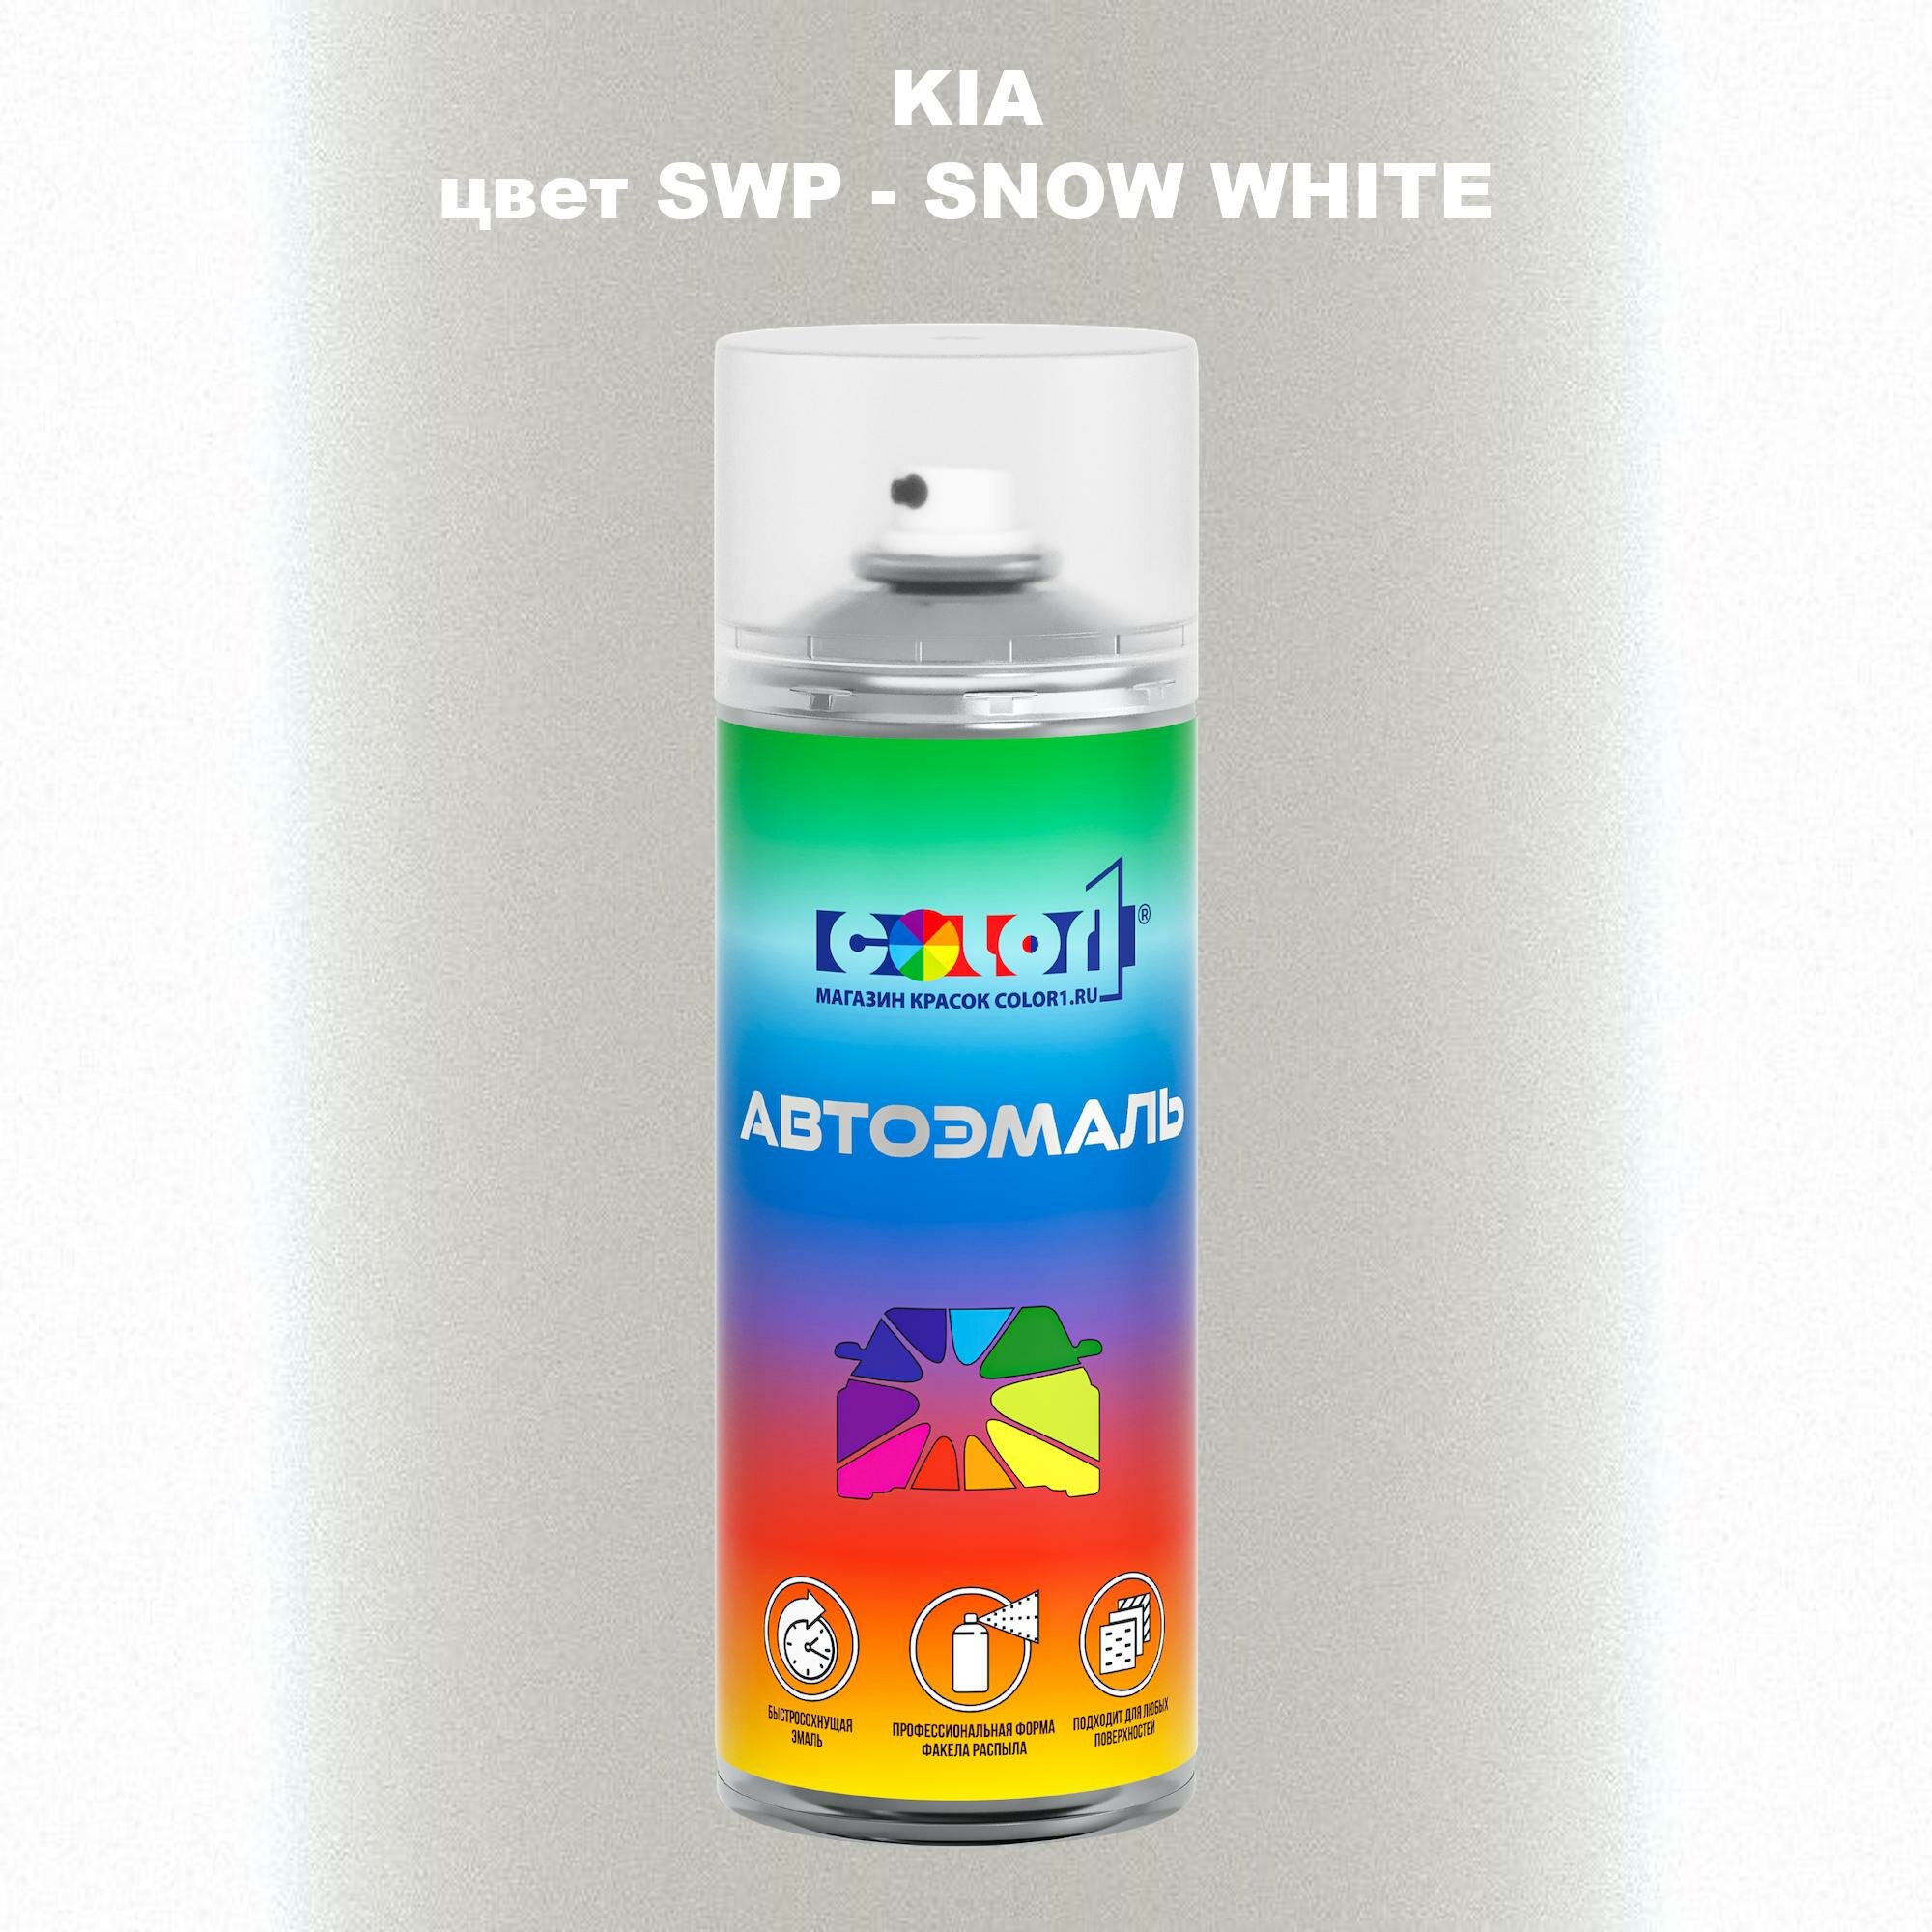 Аэрозольная краска COLOR1 для KIA, цвет SWP - SNOW WHITE